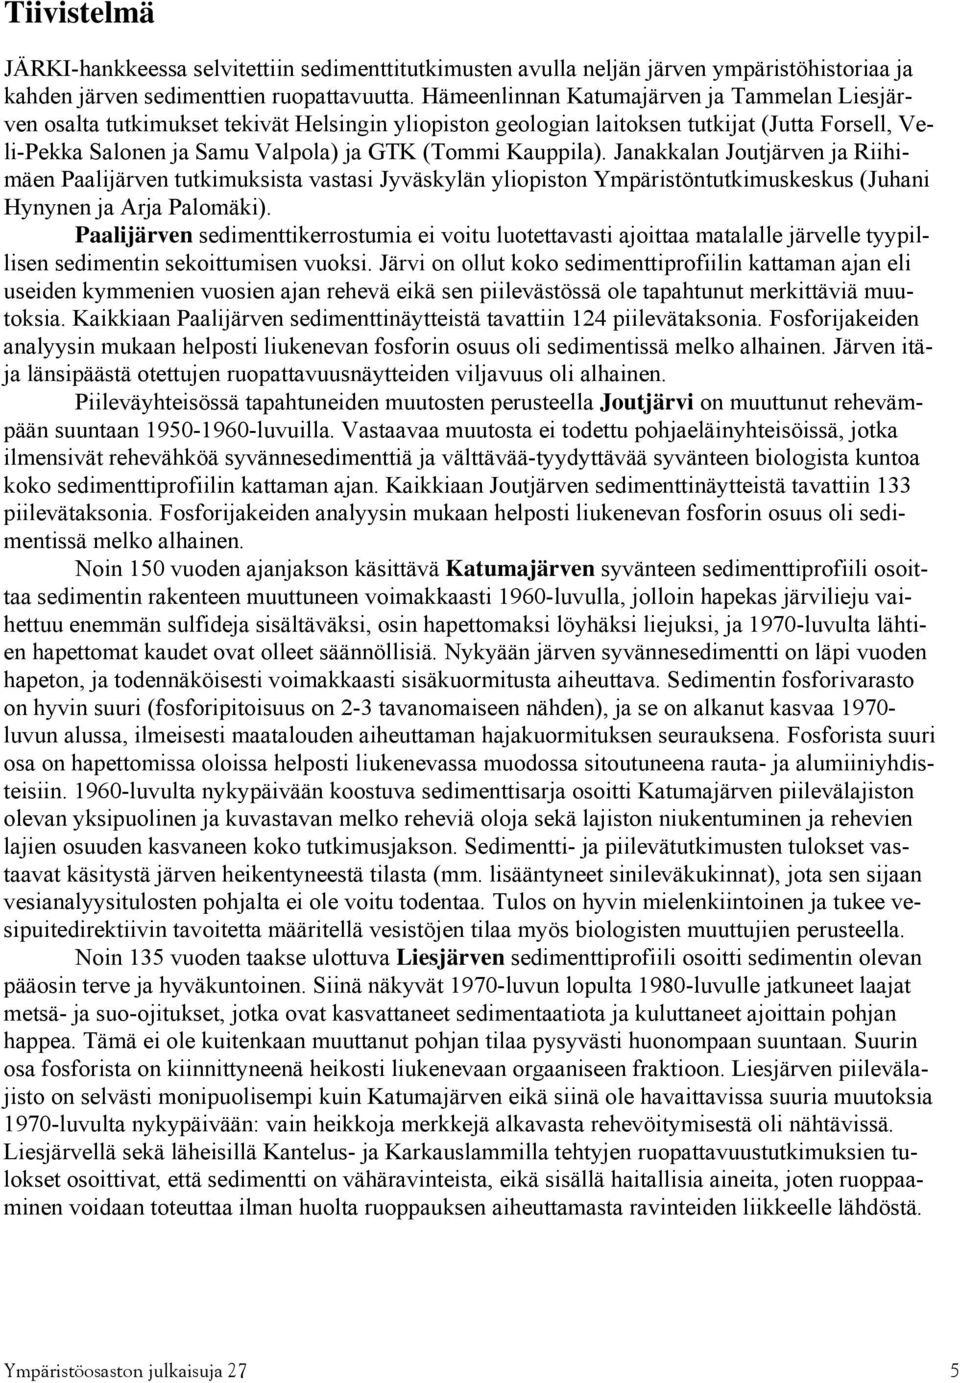 Kauppila). Janakkalan Joutjärven ja Riihimäen Paalijärven tutkimuksista vastasi Jyväskylän yliopiston Ympäristöntutkimuskeskus (Juhani Hynynen ja Arja Palomäki).